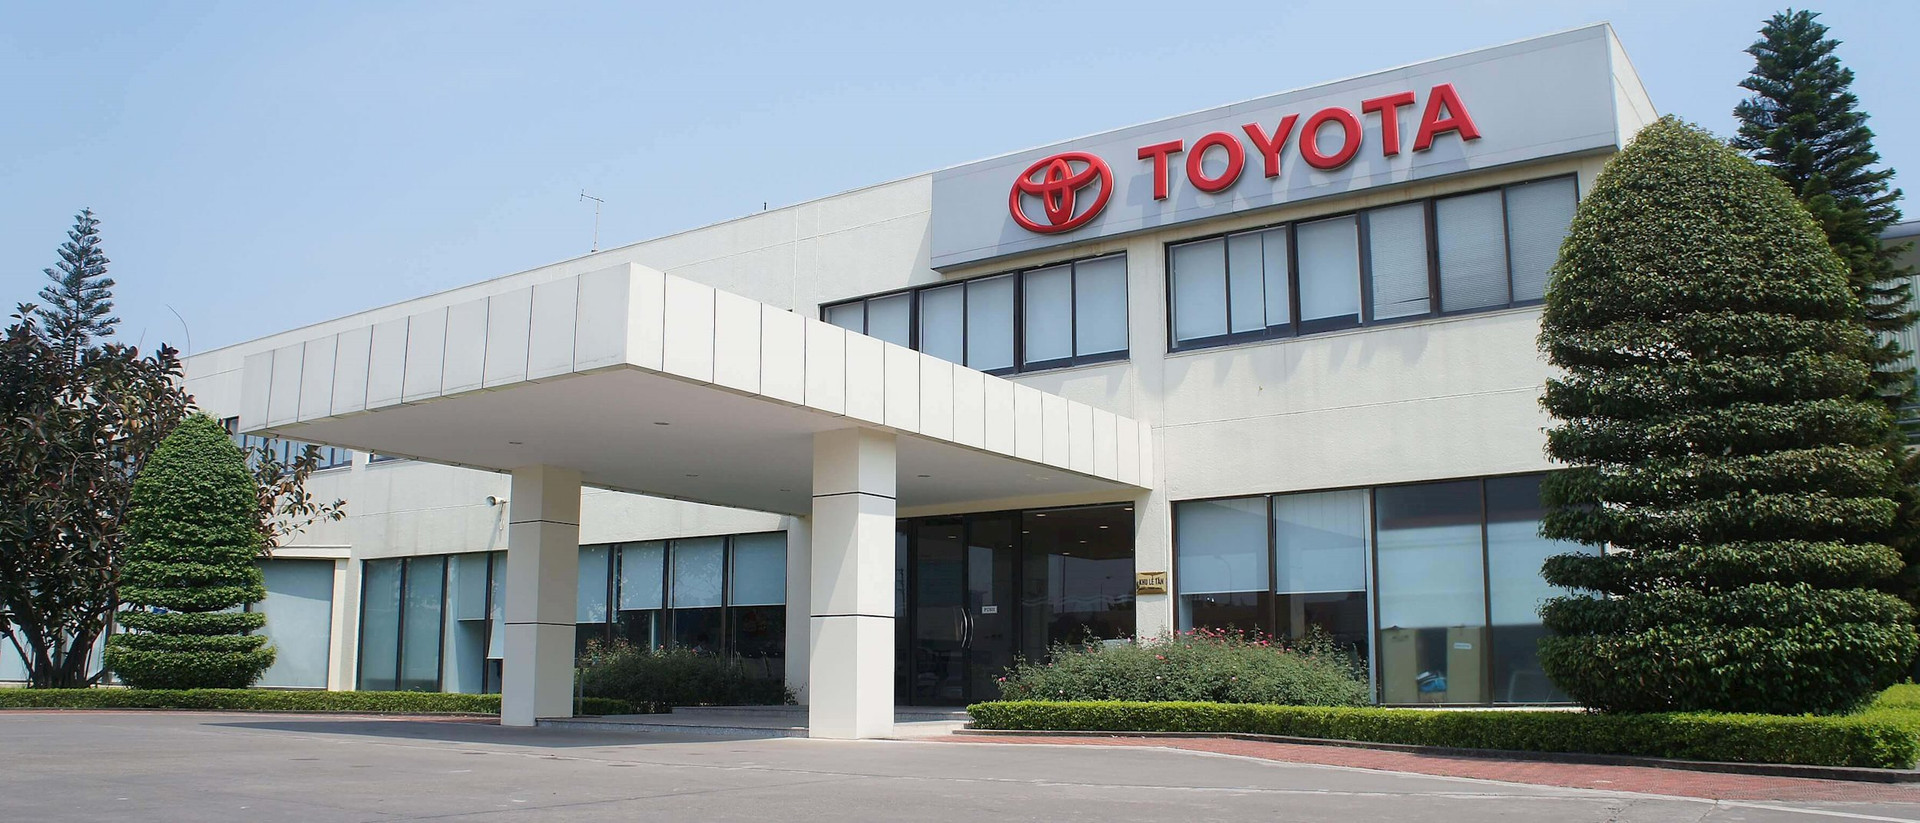 Toyota Việt Nam trước bê bối Daihatsu: Dừng bán 1 mẫu xe, công bố xe đã bán có thể tiếp tục sử dụng bình thường - Ảnh 1.